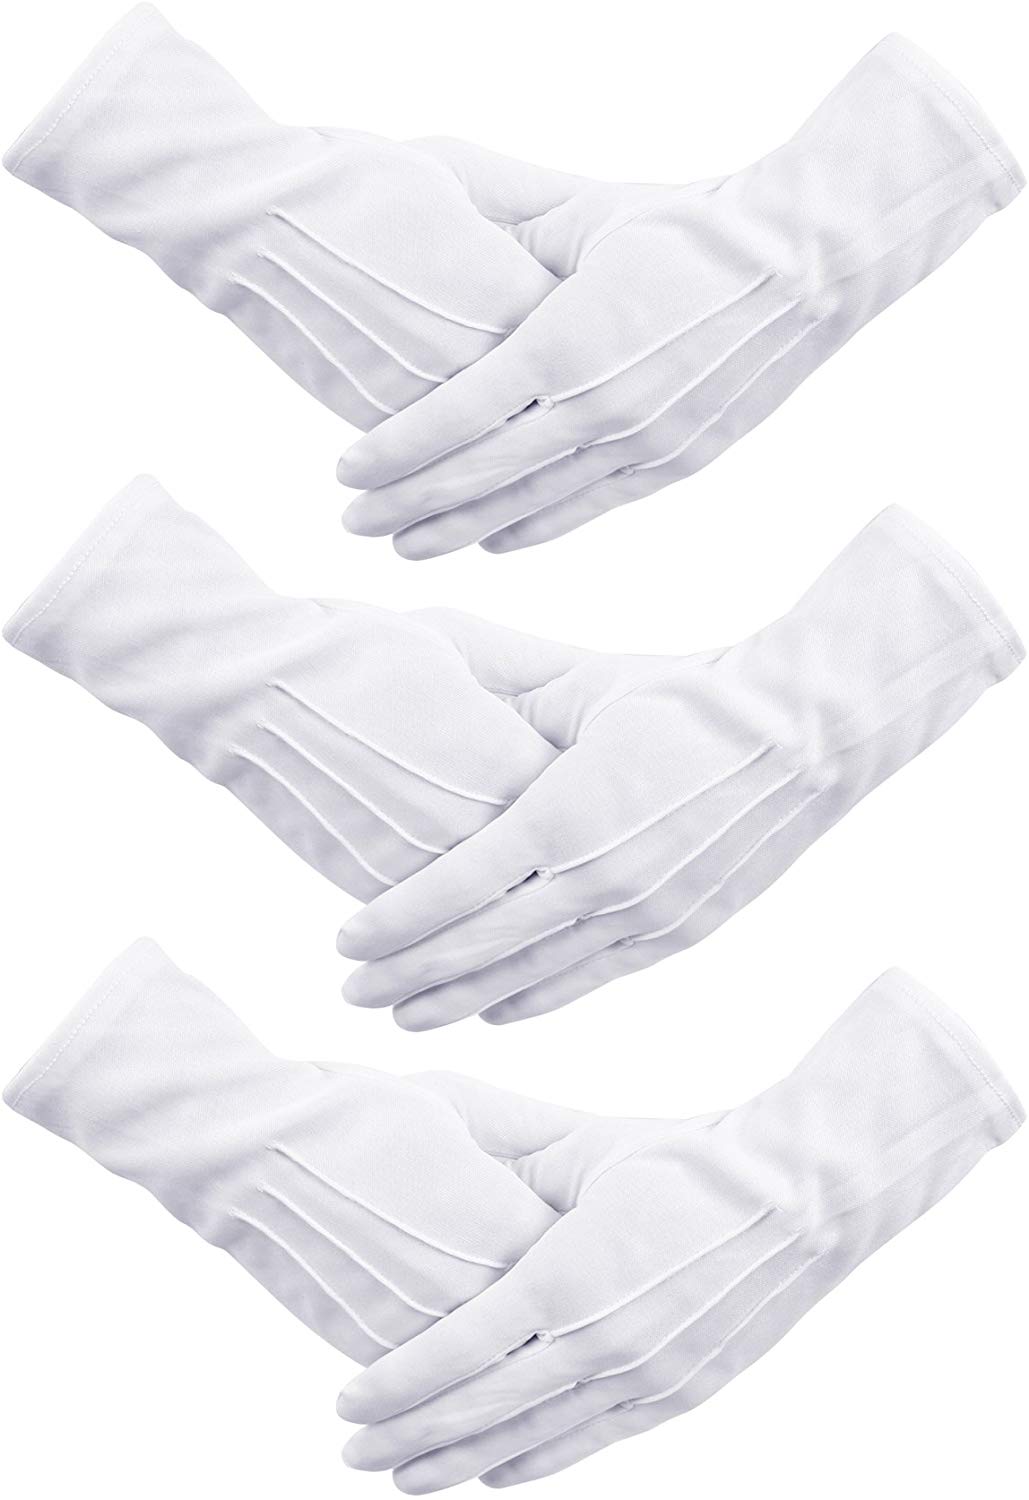 Senkary 3 Pairs White Nylon Cotton Gloves